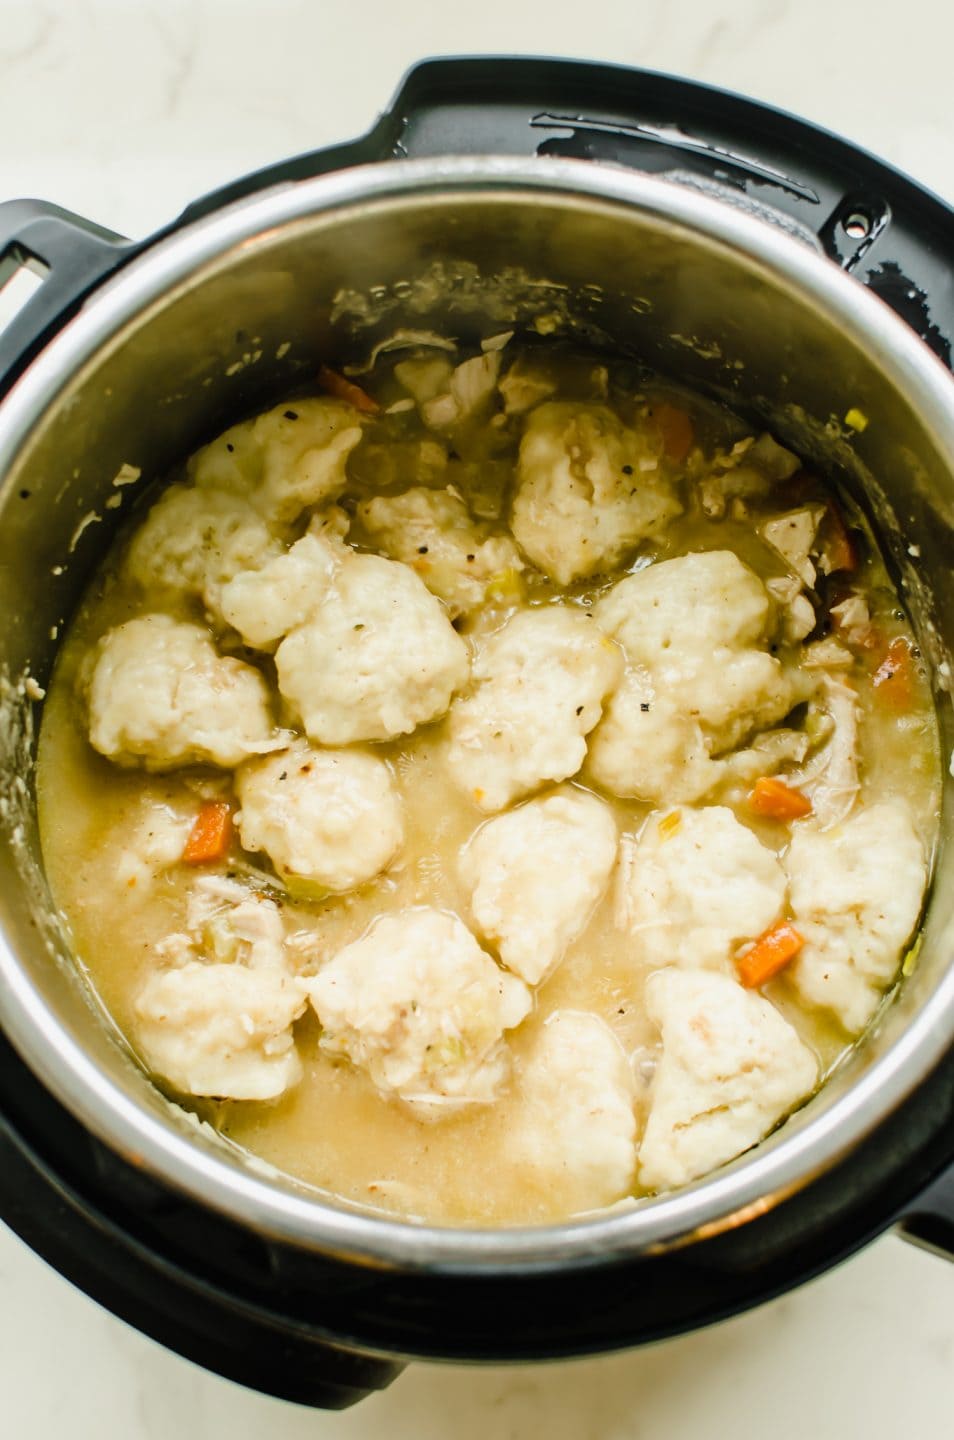 Turkey and dumplings inside of an Instant Pot. 